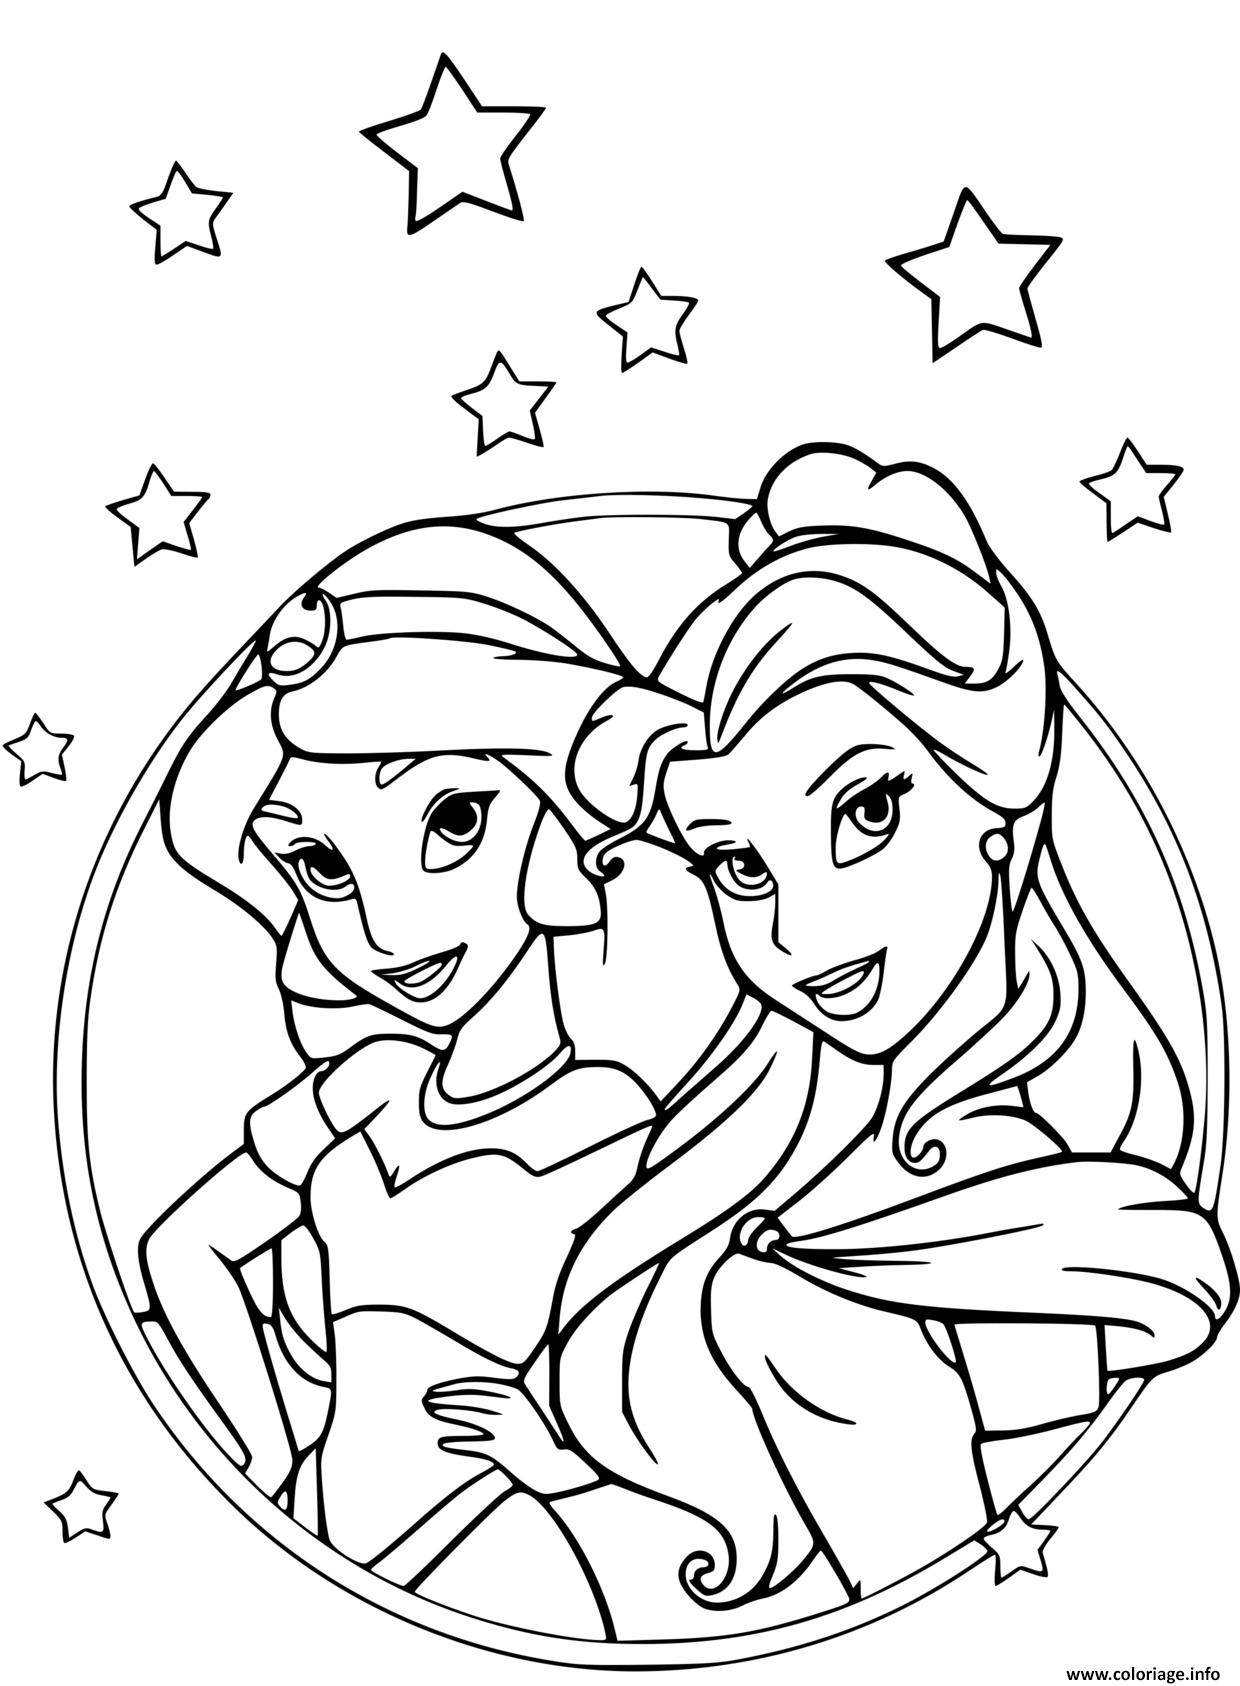 Coloriage Les Princesses Jasmine Dans Aladdin Et Belle Et La Bete avec Dessin A Imprimer De Princesse